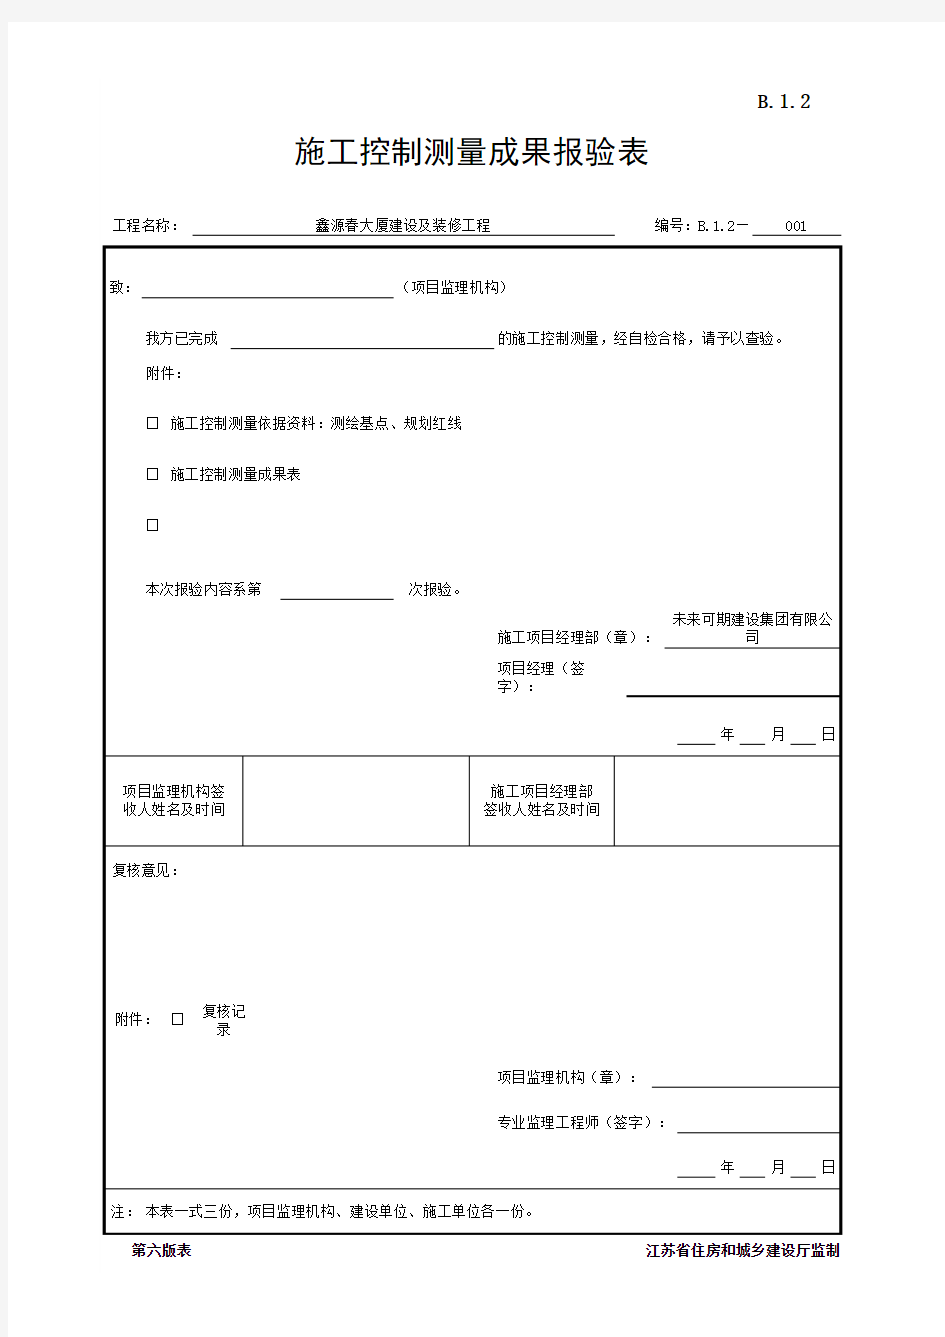 B.1.2 施工控制测量成果报验表(江苏省监理第六版)